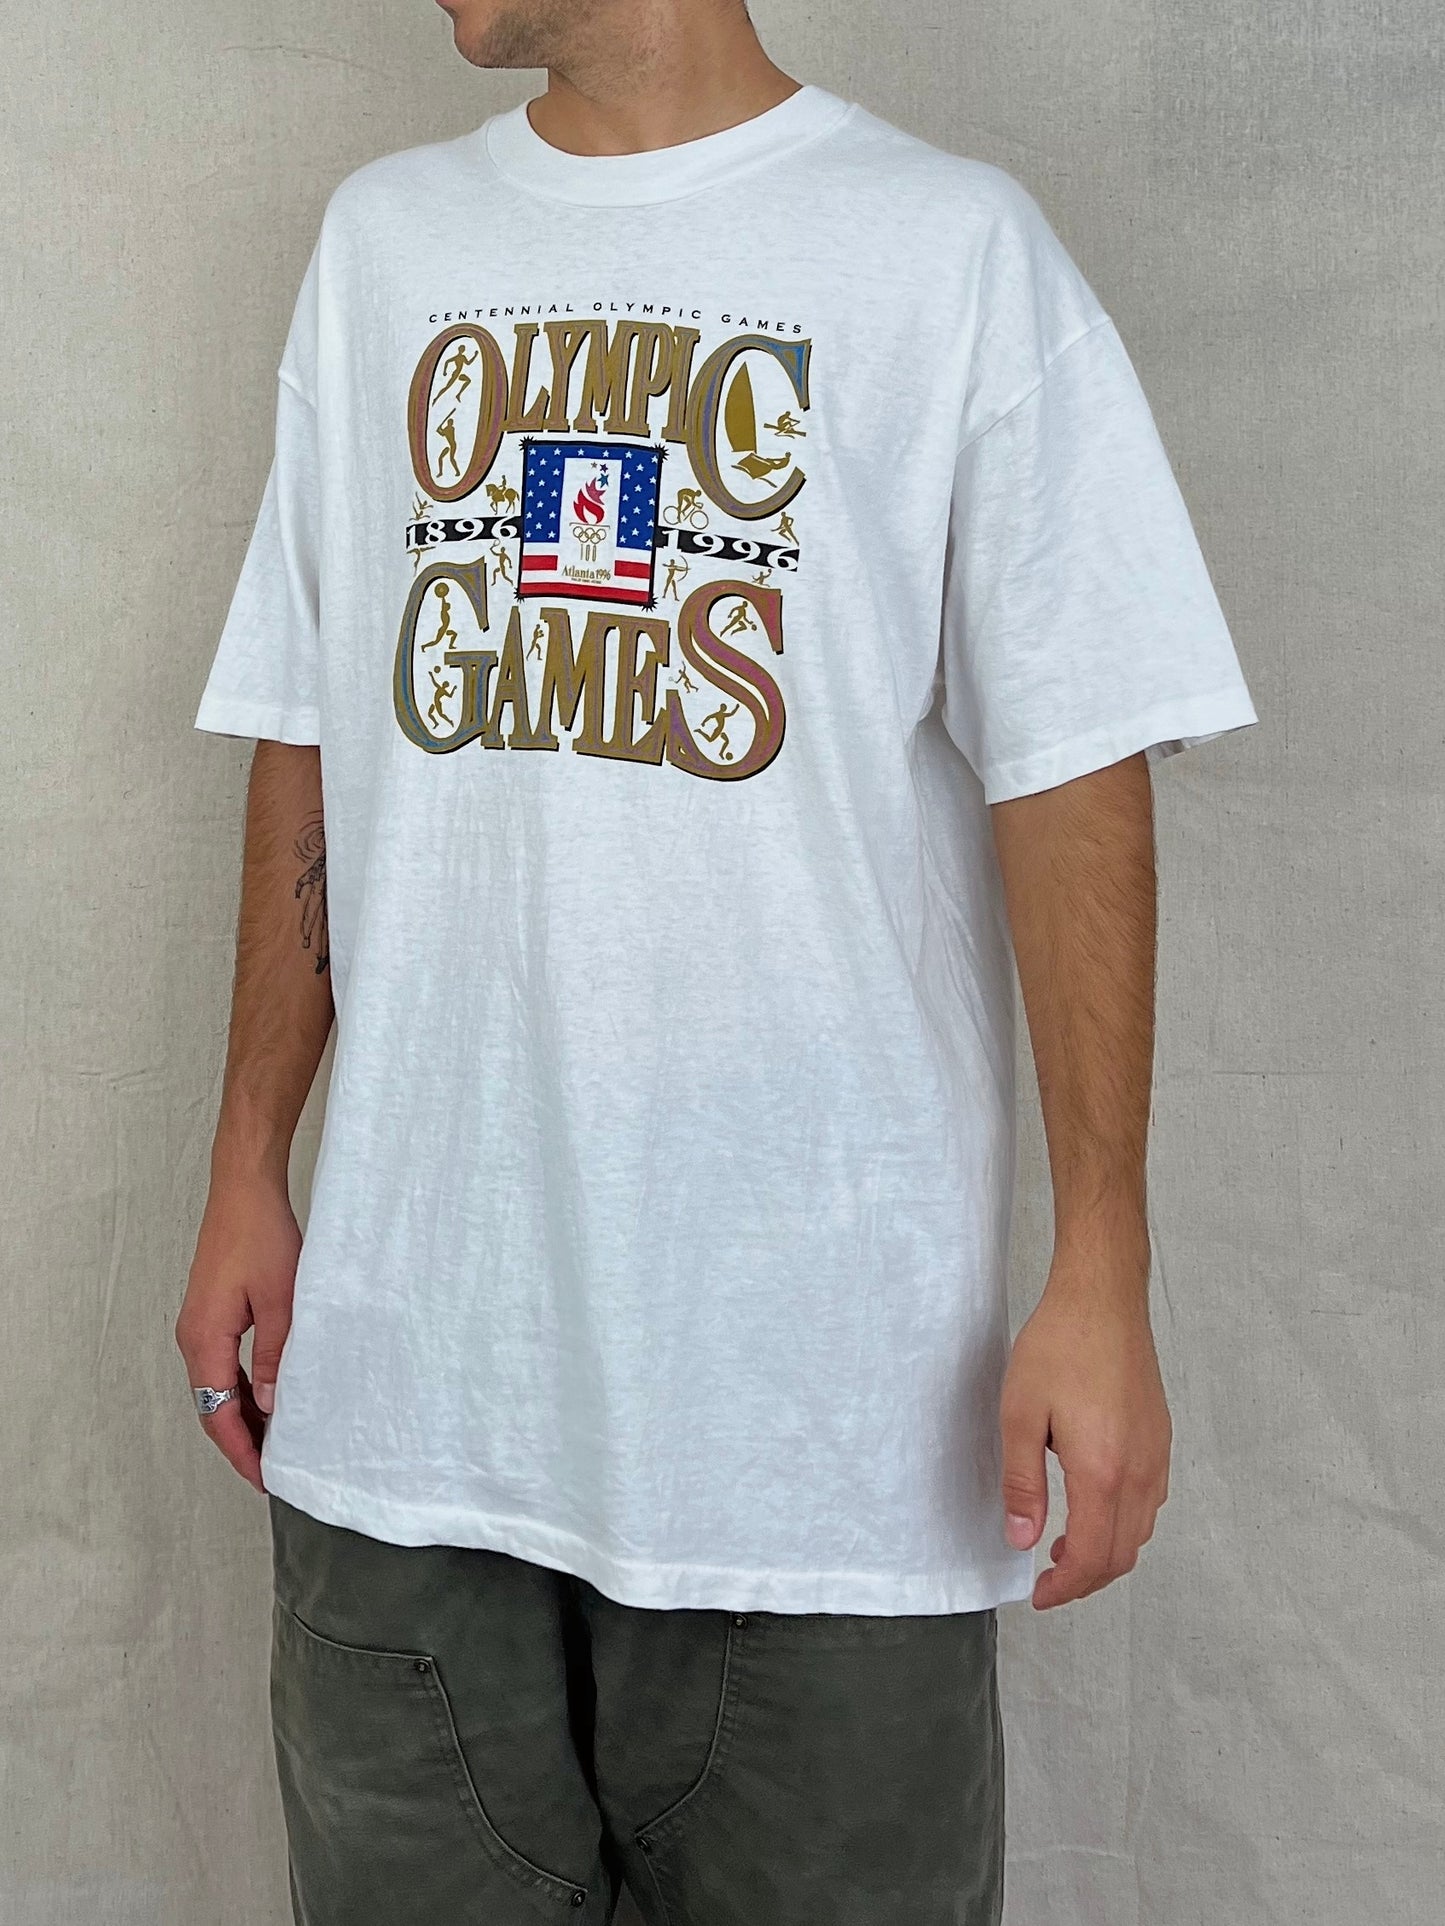 1996 Atlanta Olympics Vintage T-Shirt Size XL-2XL